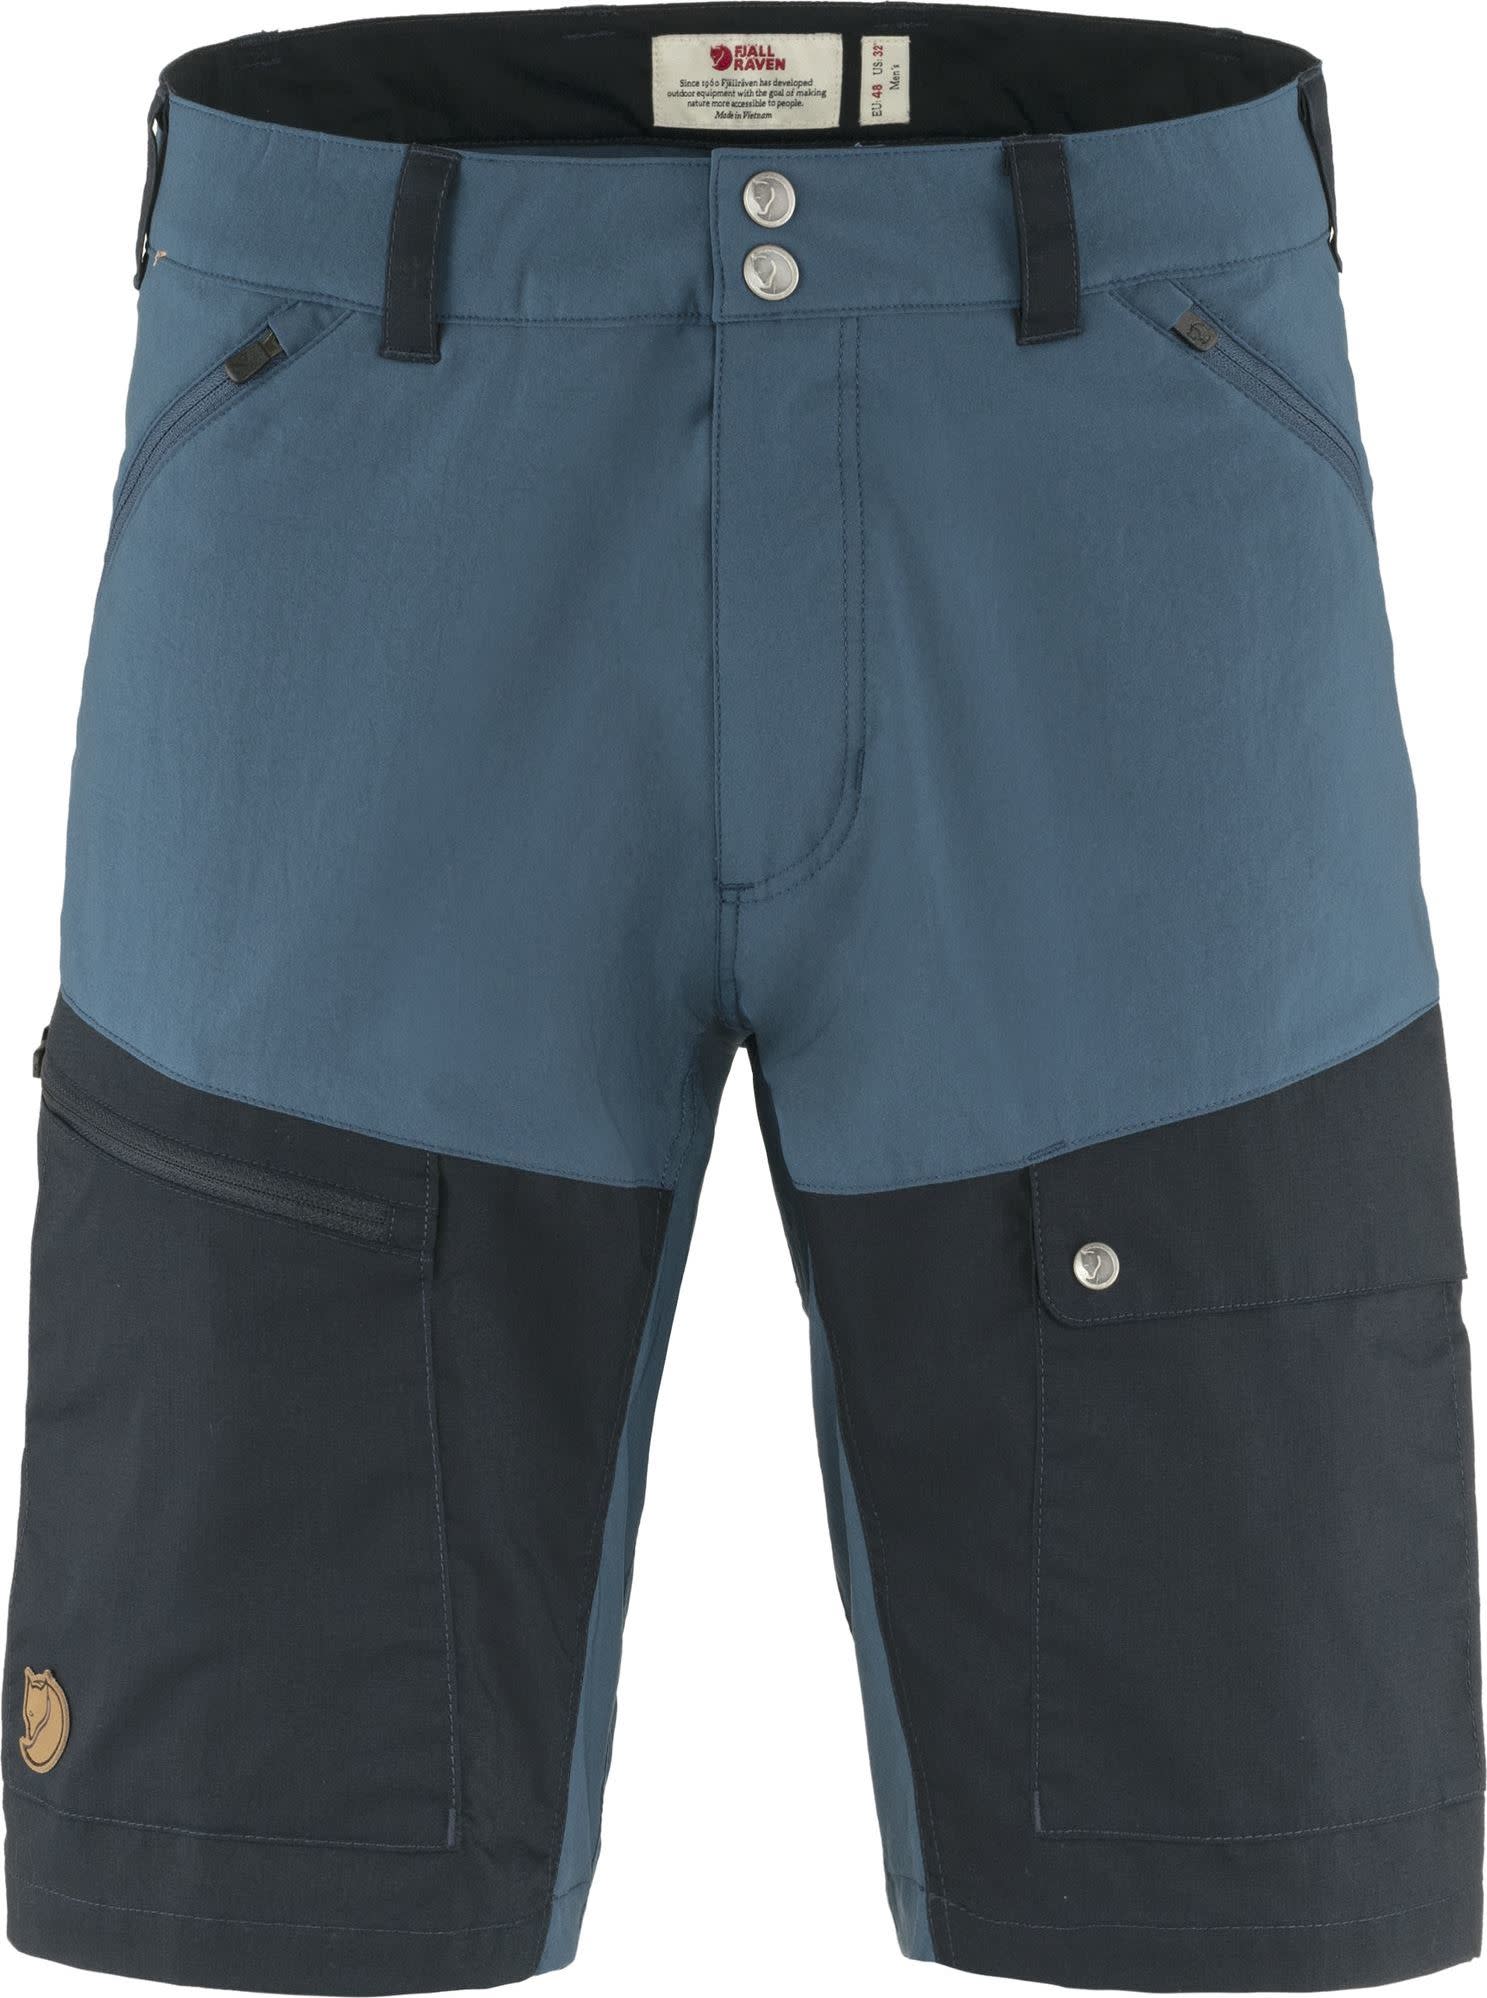 Fjällräven Men's Abisko Midsummer Shorts Indigo Blue/Dark Navy